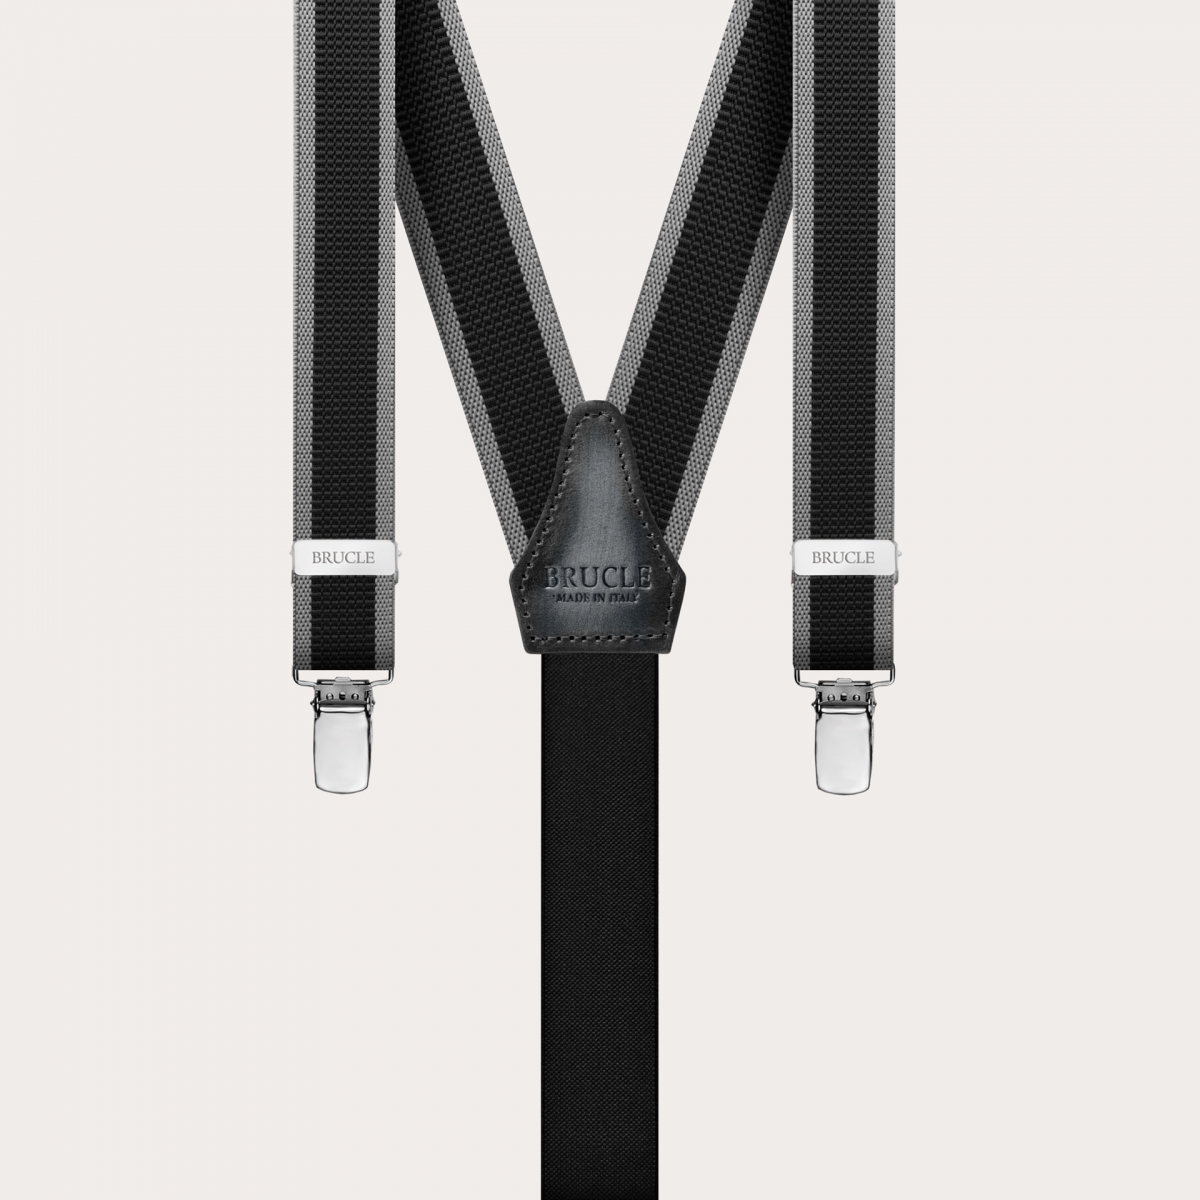 BRUCLE Dünne nickelfreie Hosenträger mit Seitenbändern, schwarz und grau